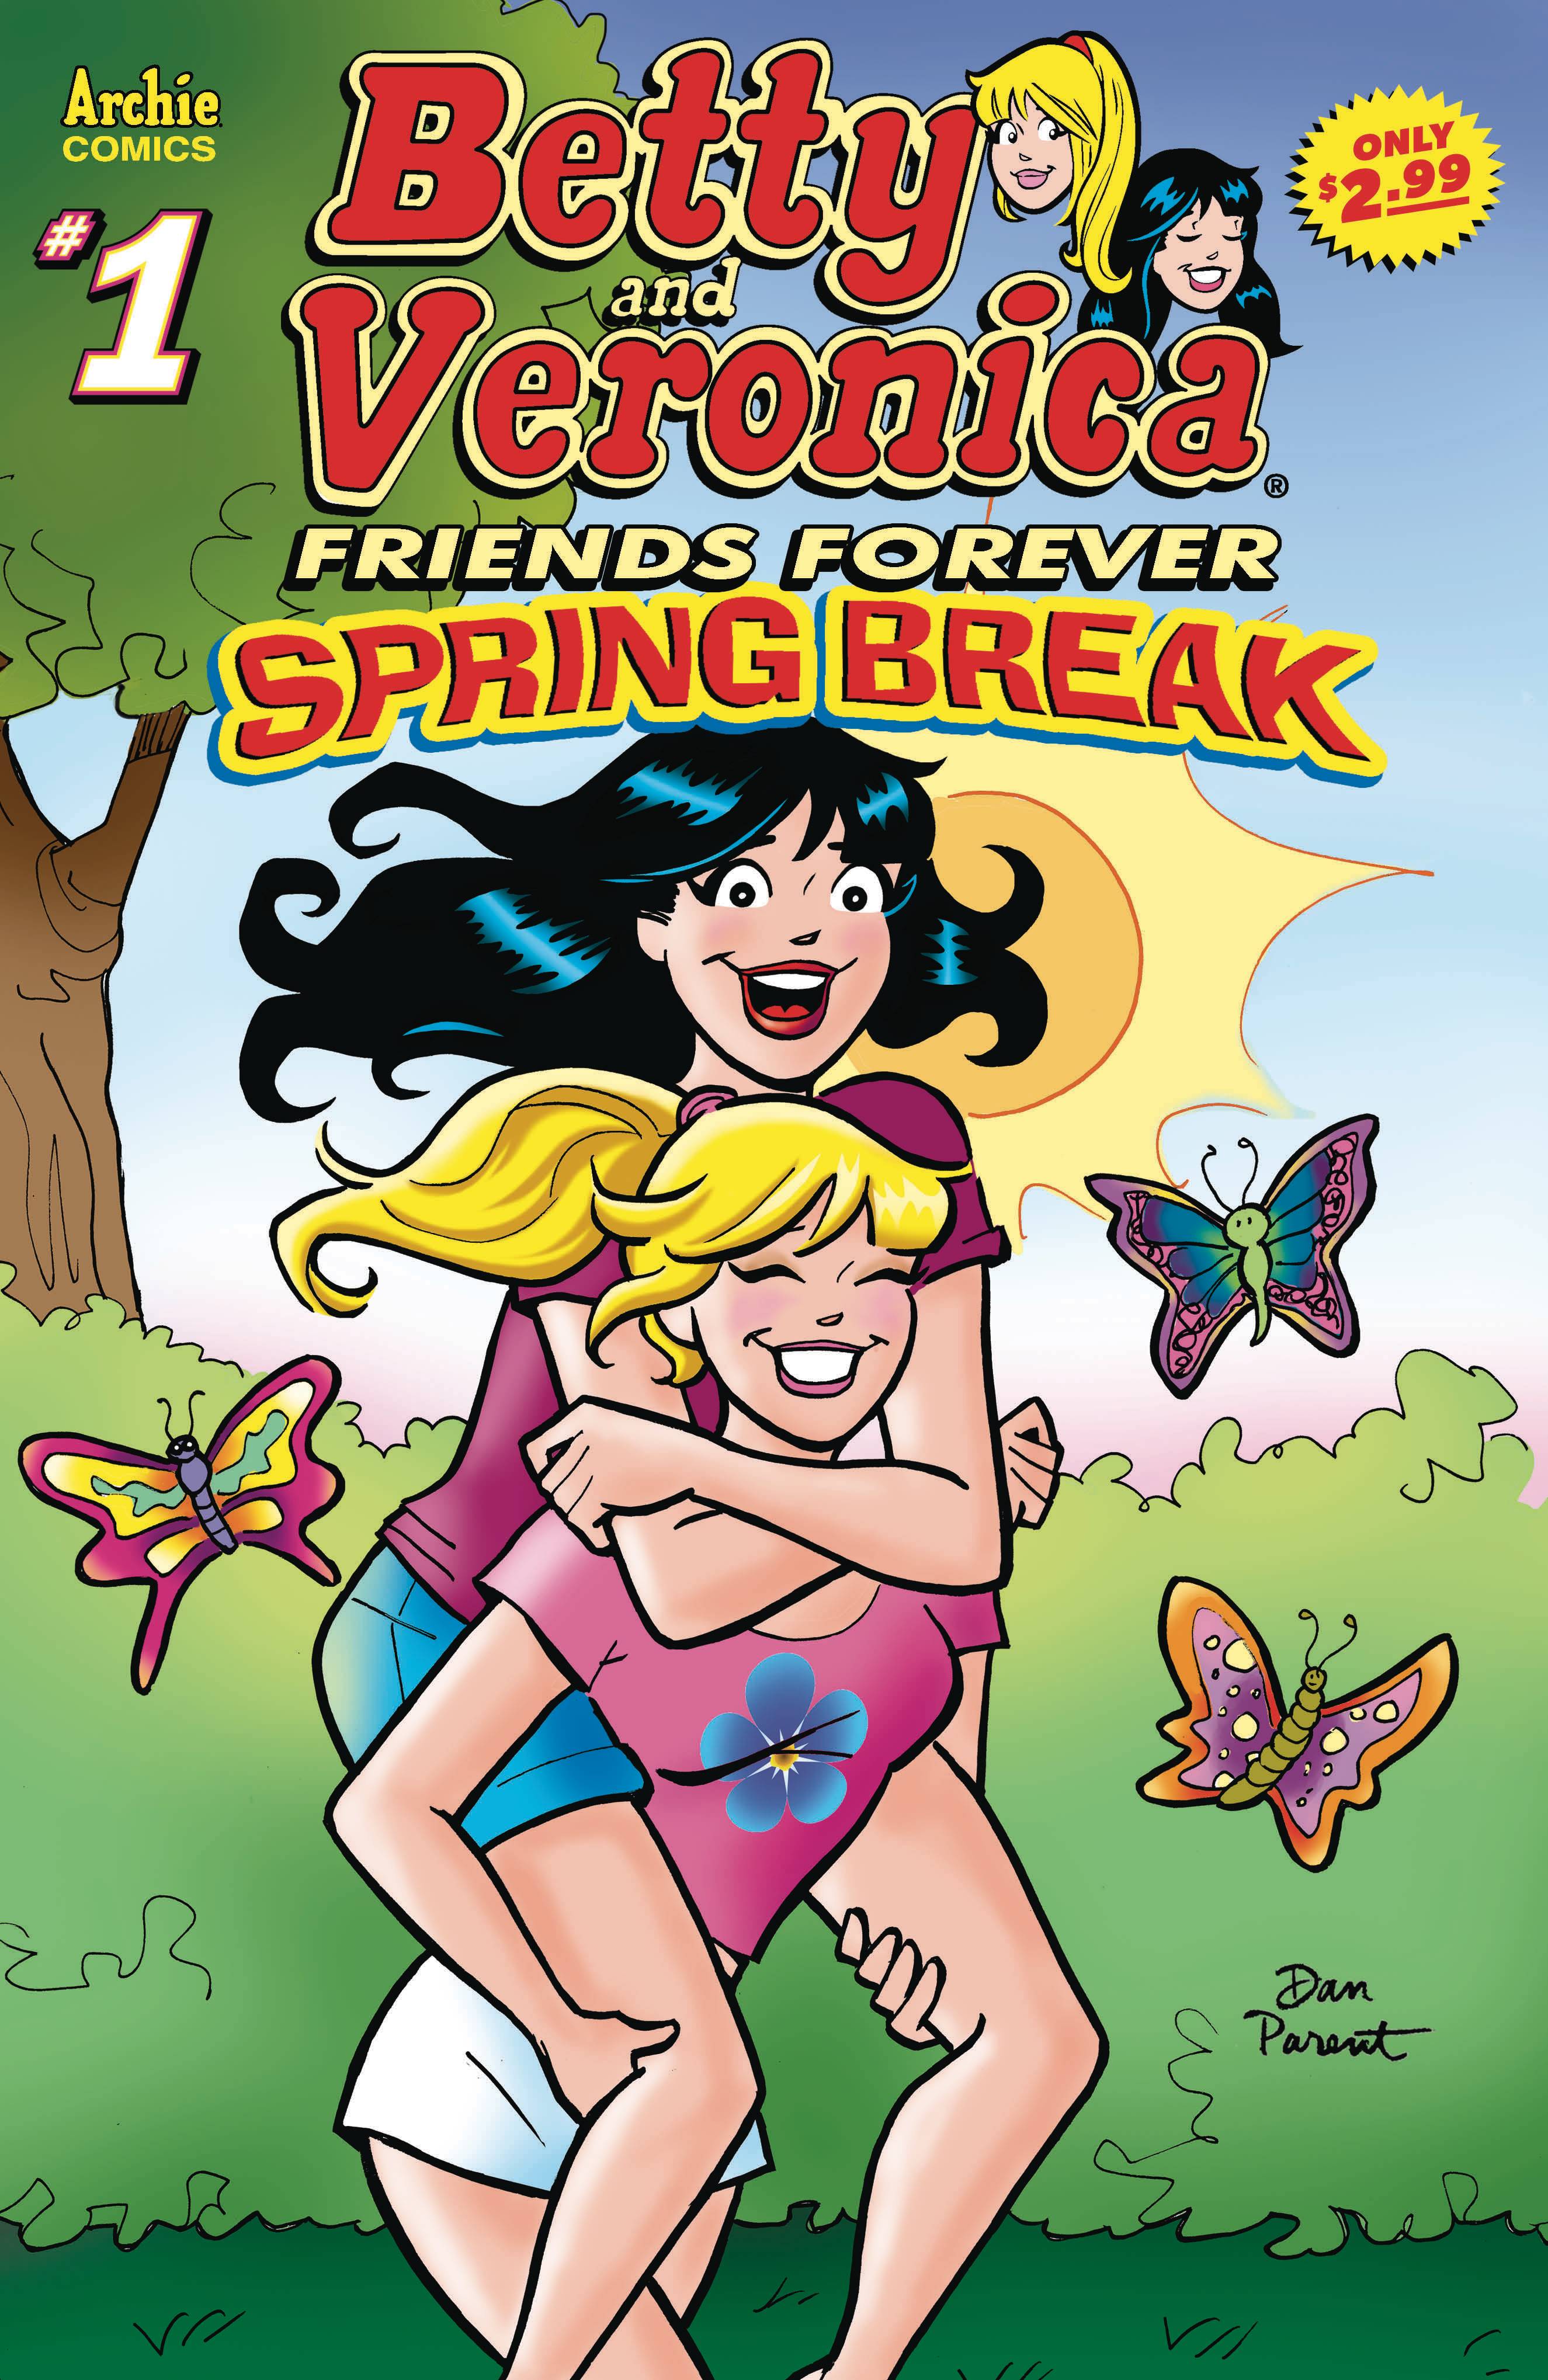 BETTY & VERONICA FRIENDS FOREVER SPRING BREAK #1 03/10/21